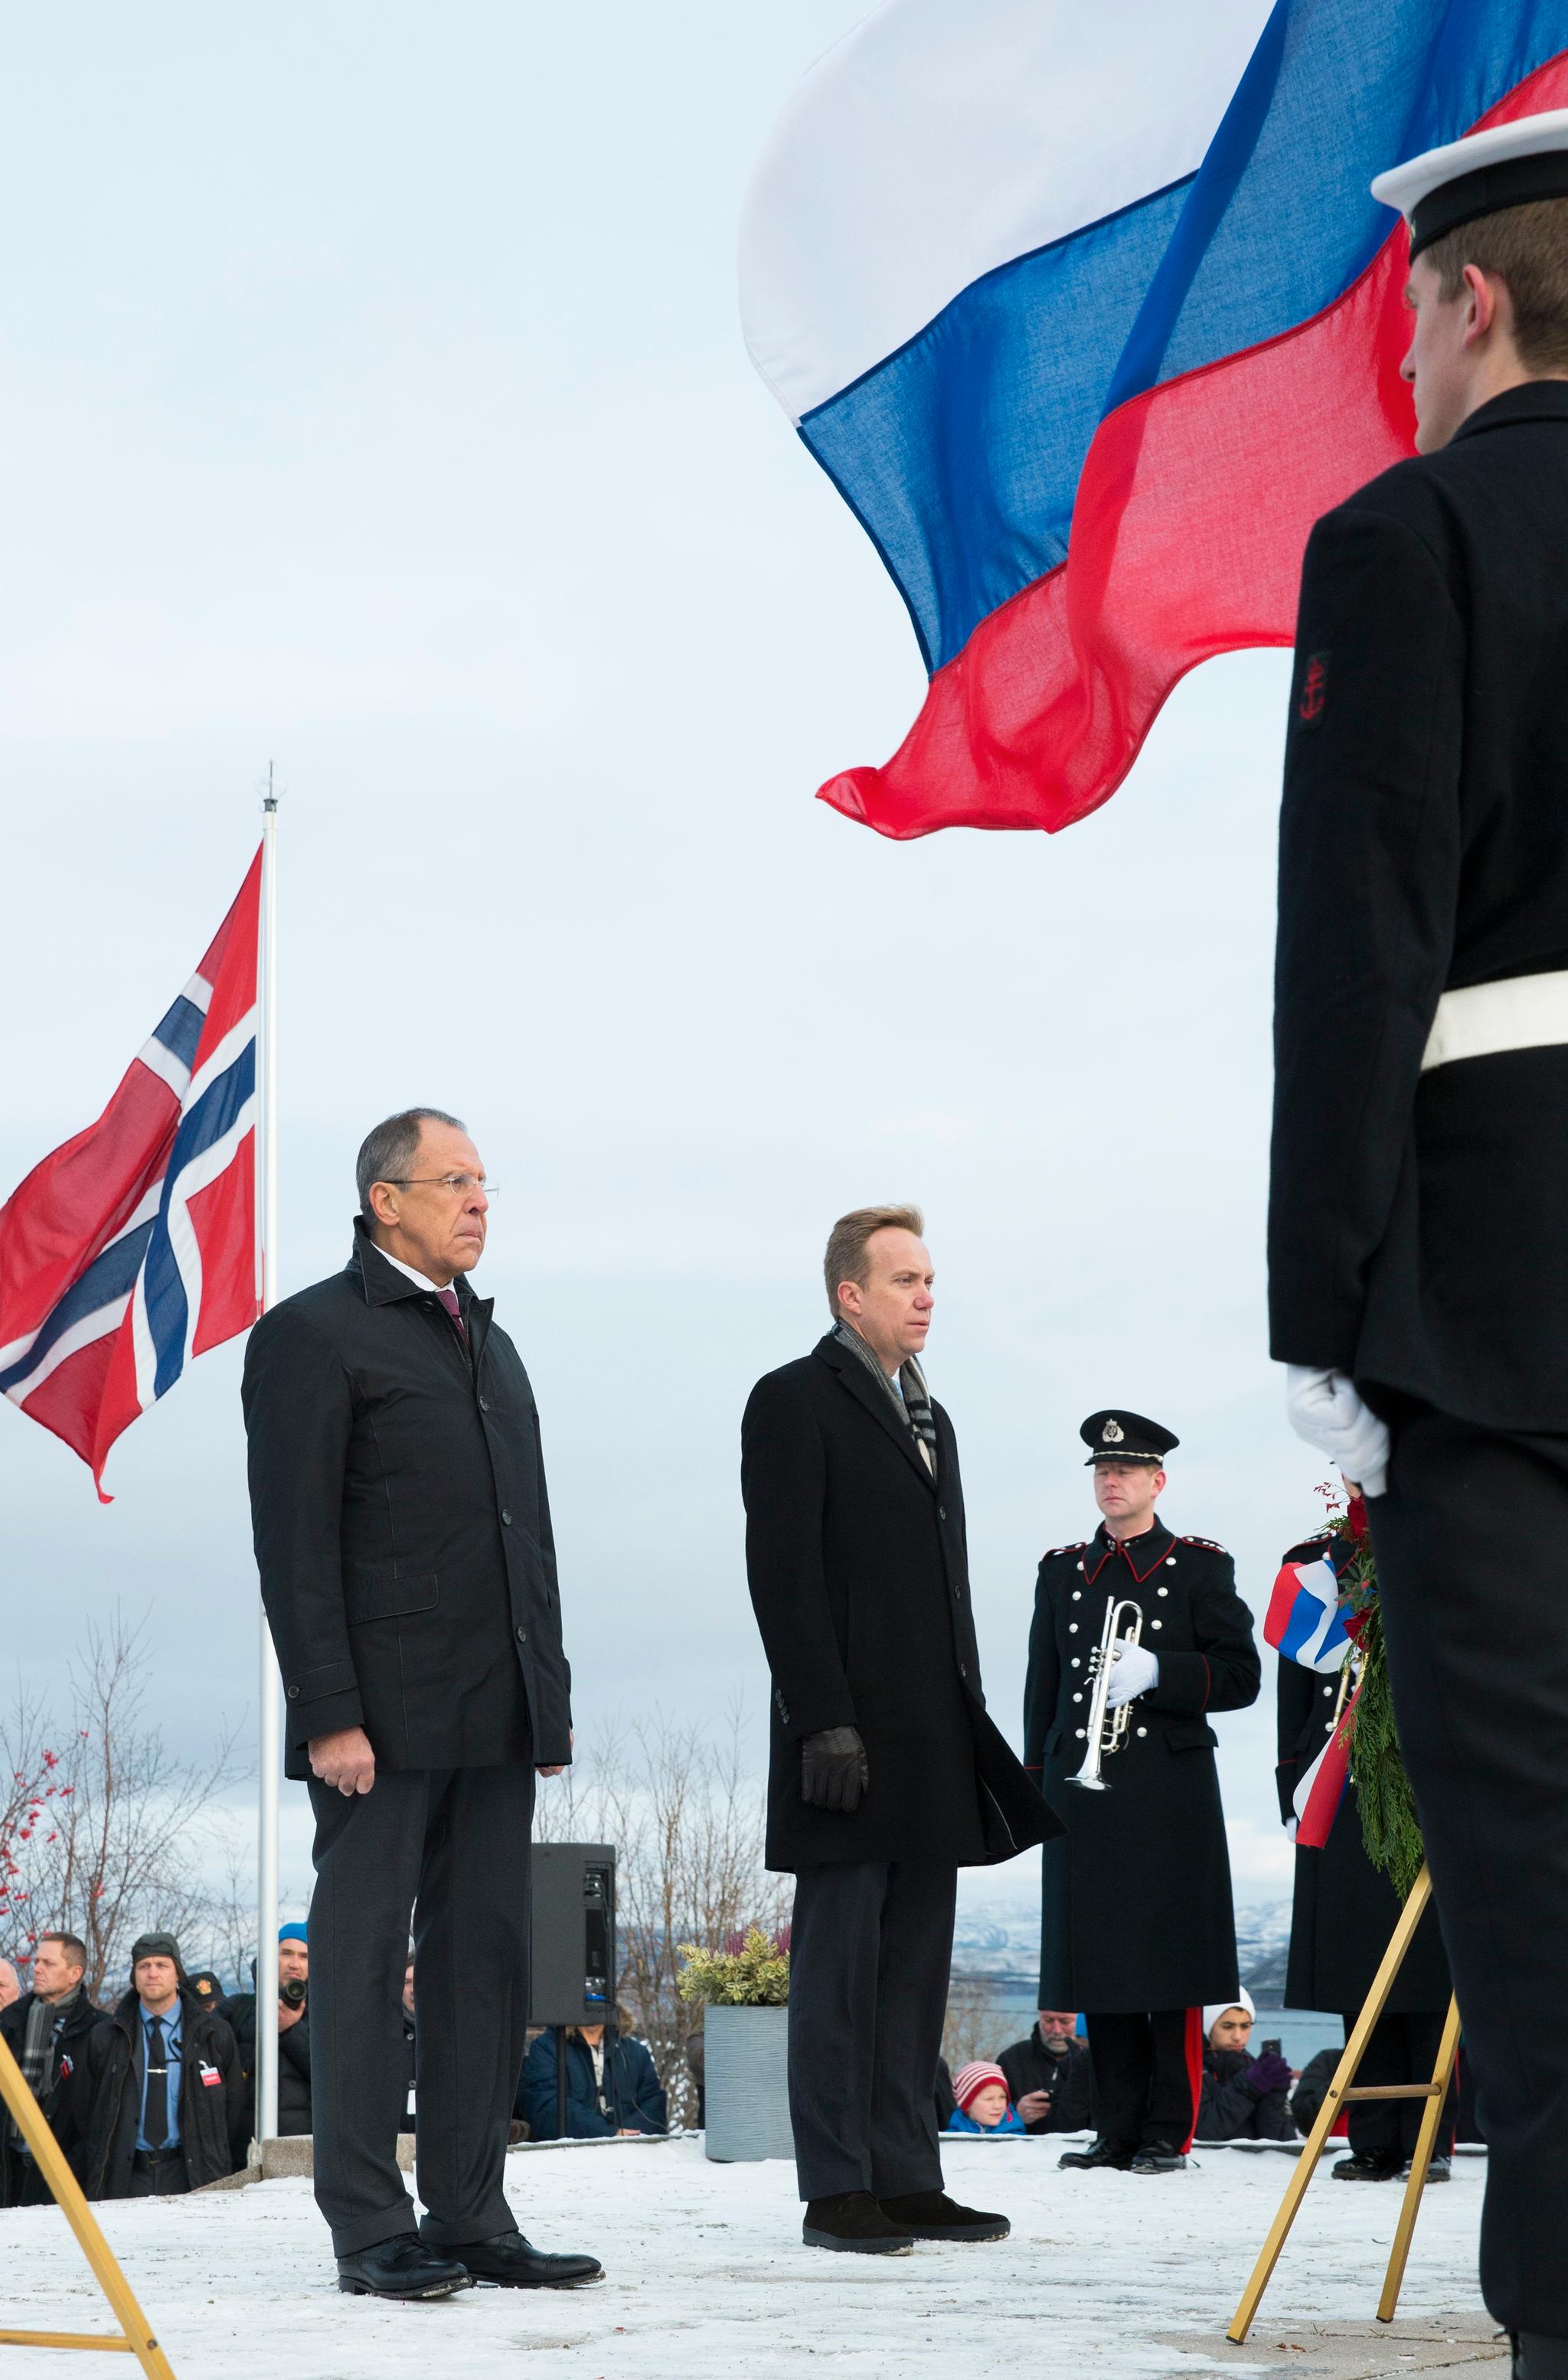 Russlands utenriksminister Sergej Lavrov var også til stede under 70 års markeringen av jubileet for frigjøringen av Øst-Finnmark i 2014. Hedr sammen med daværende utenriksminister Børge Brende.